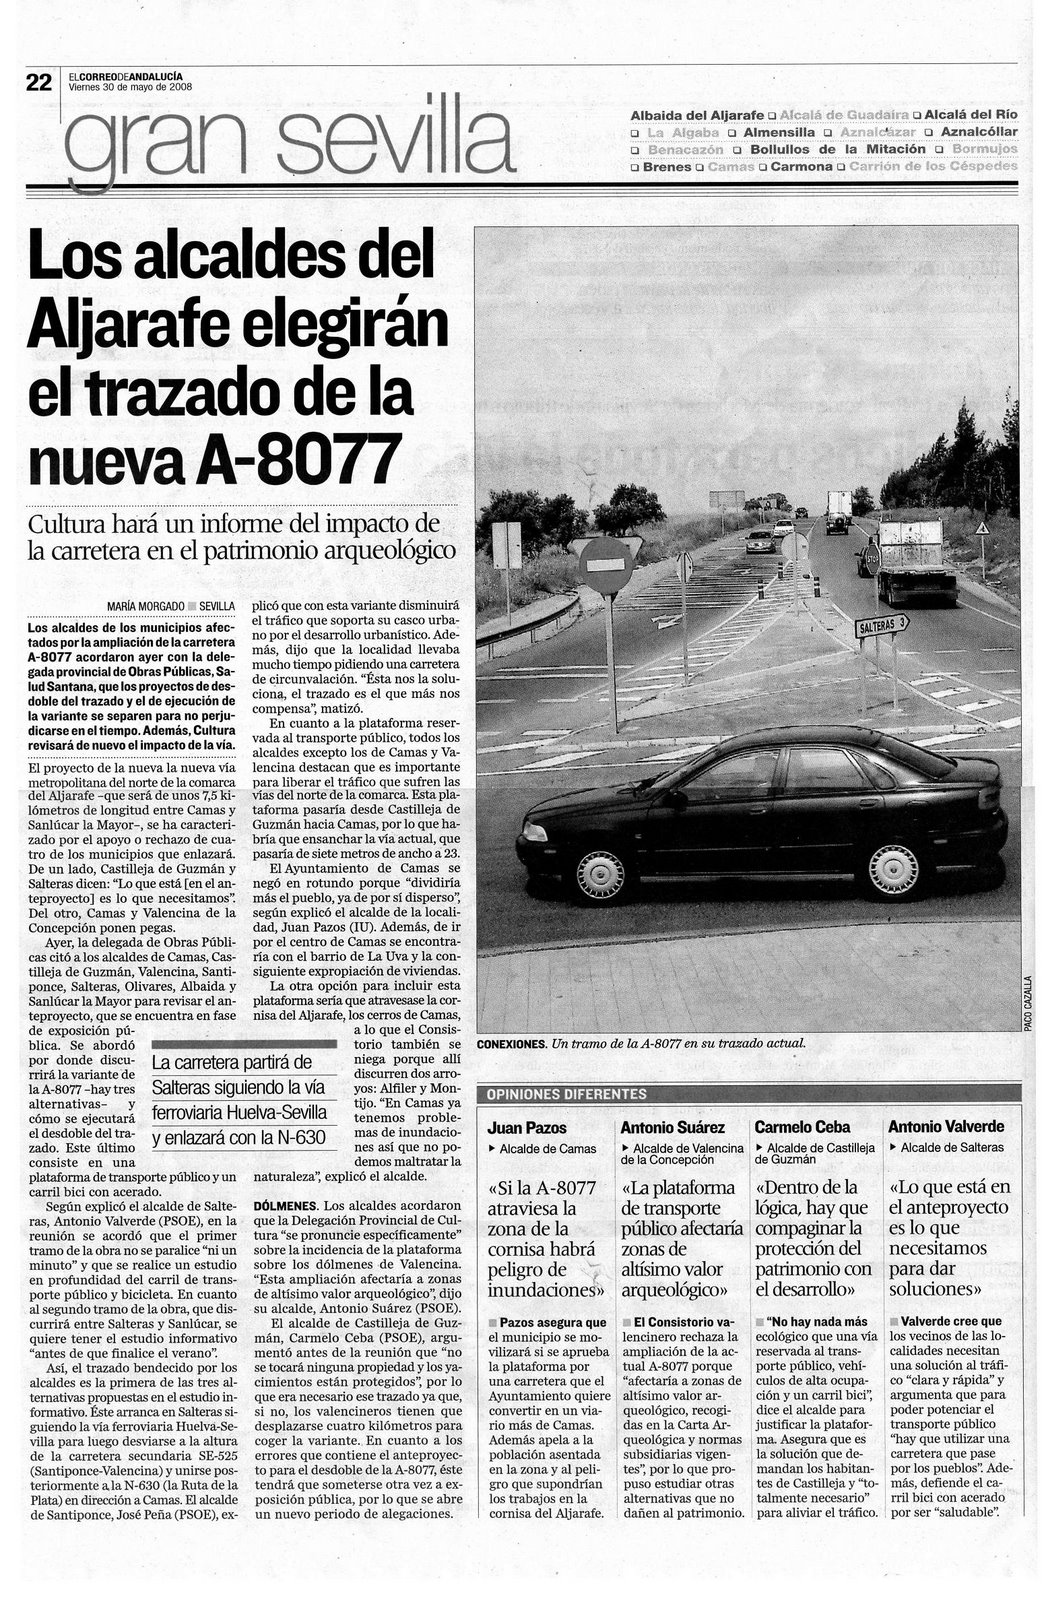 [2008+05+30+CORREO+ANDALUCÃ A+LOS+ALCALDES+DEL+ALJARAFE+ELEGIRÃ N+EL+TRAZADO+DE+LA+NUEVA+A-8077.JPG]